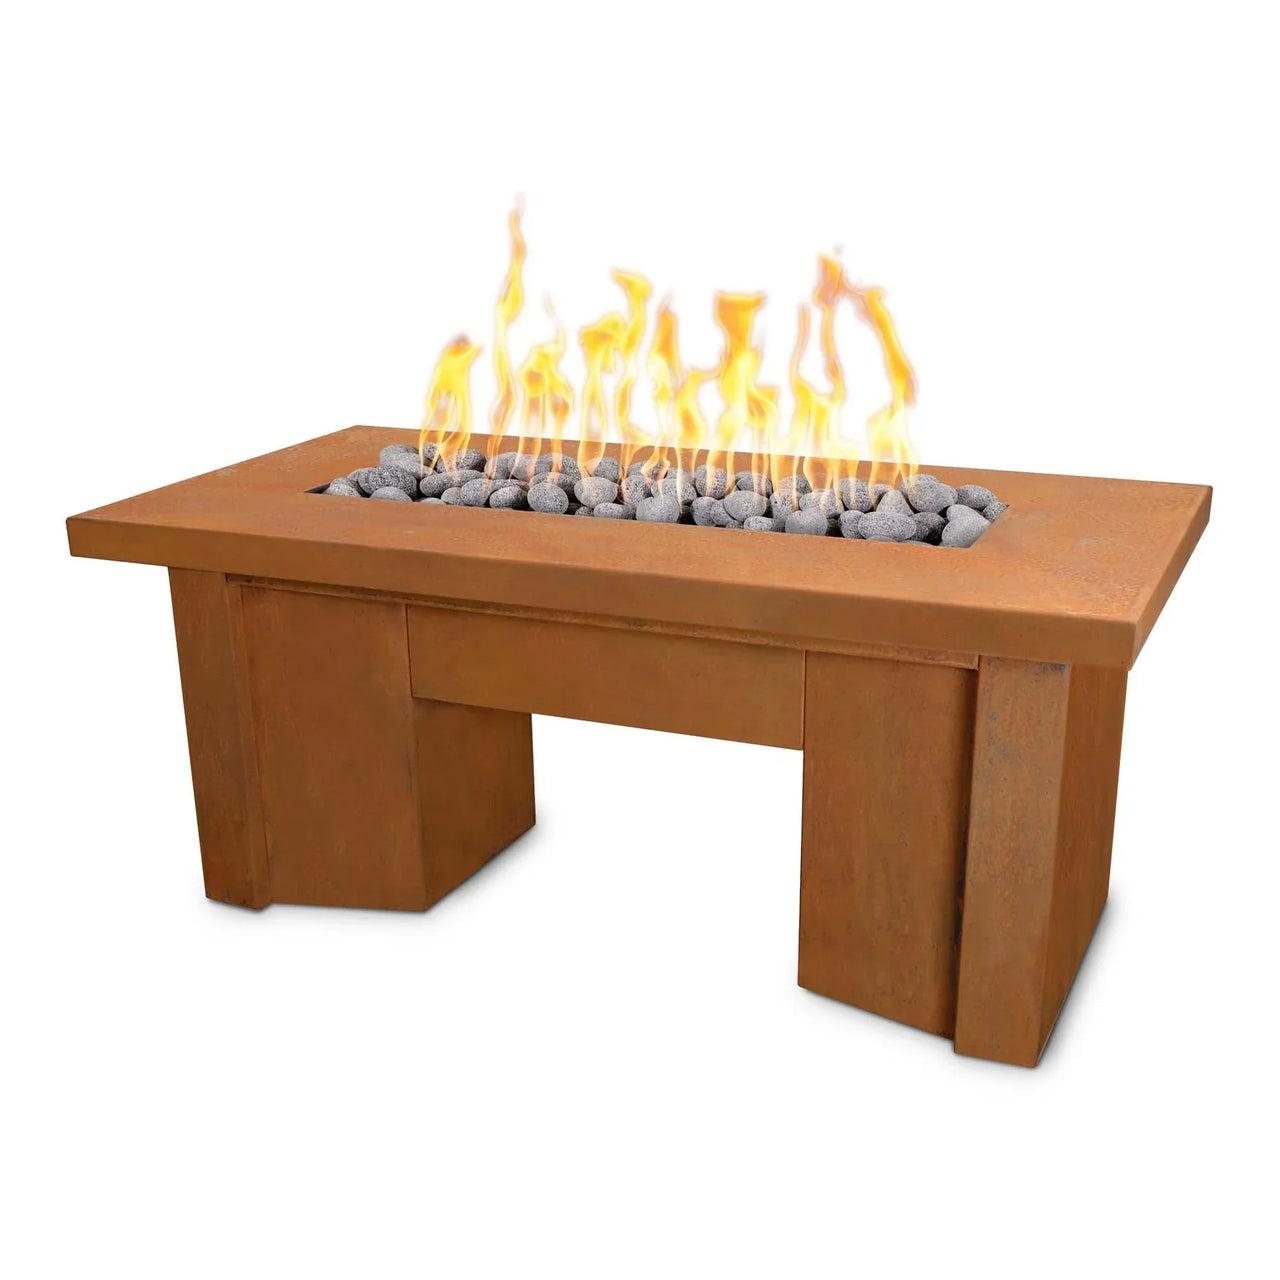 The Outdoor Plus 60" Rectangular Alameda Corten Steel Fire Table